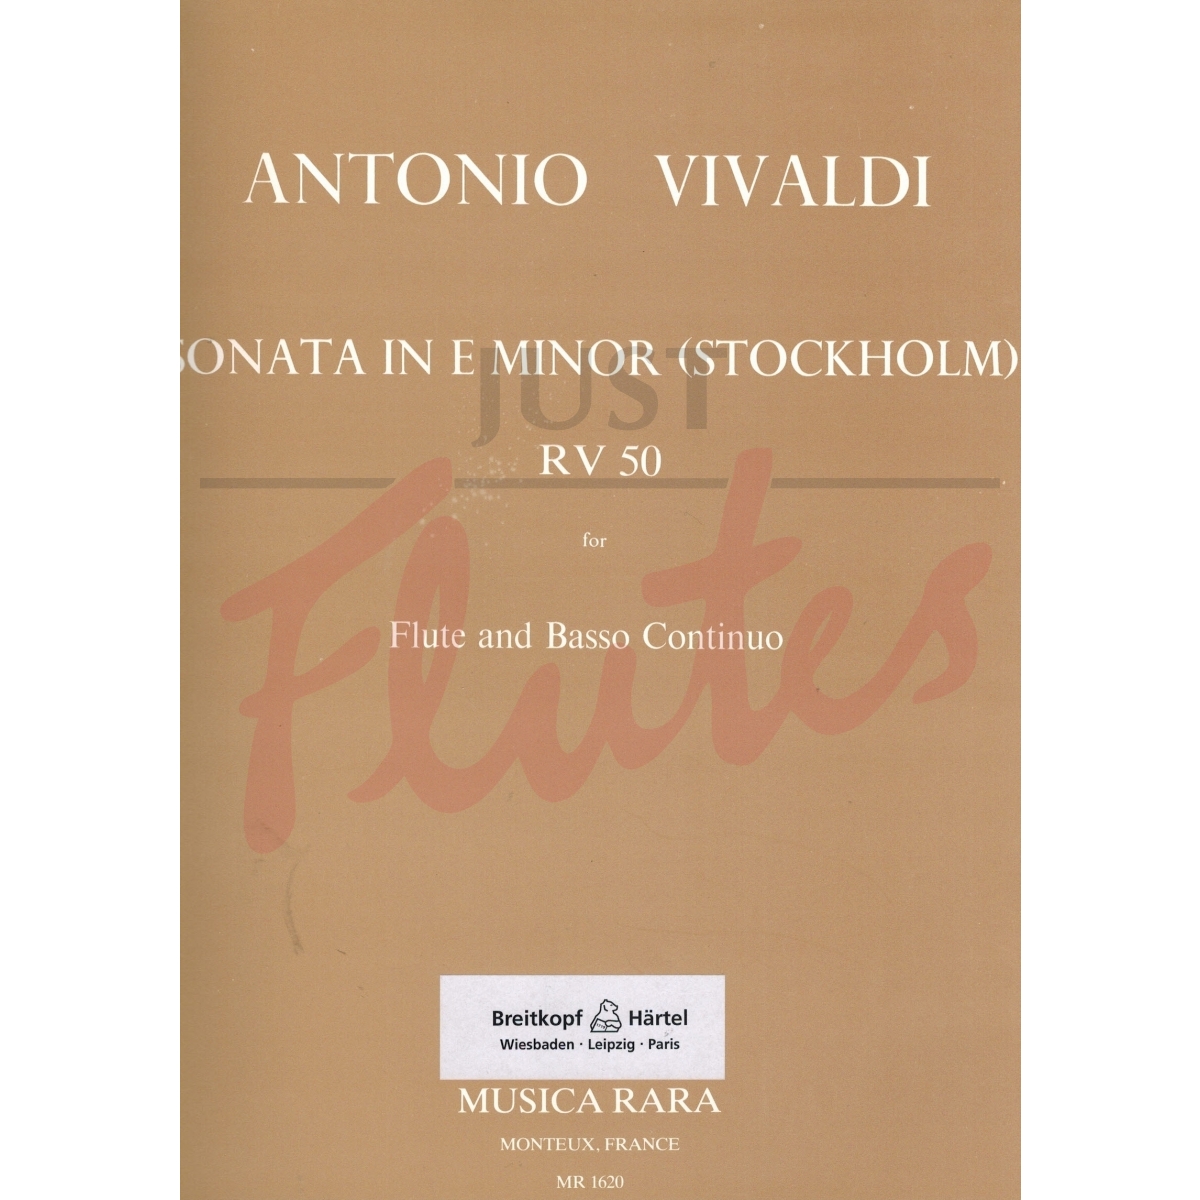 Sonata in E minor (Stockholm)